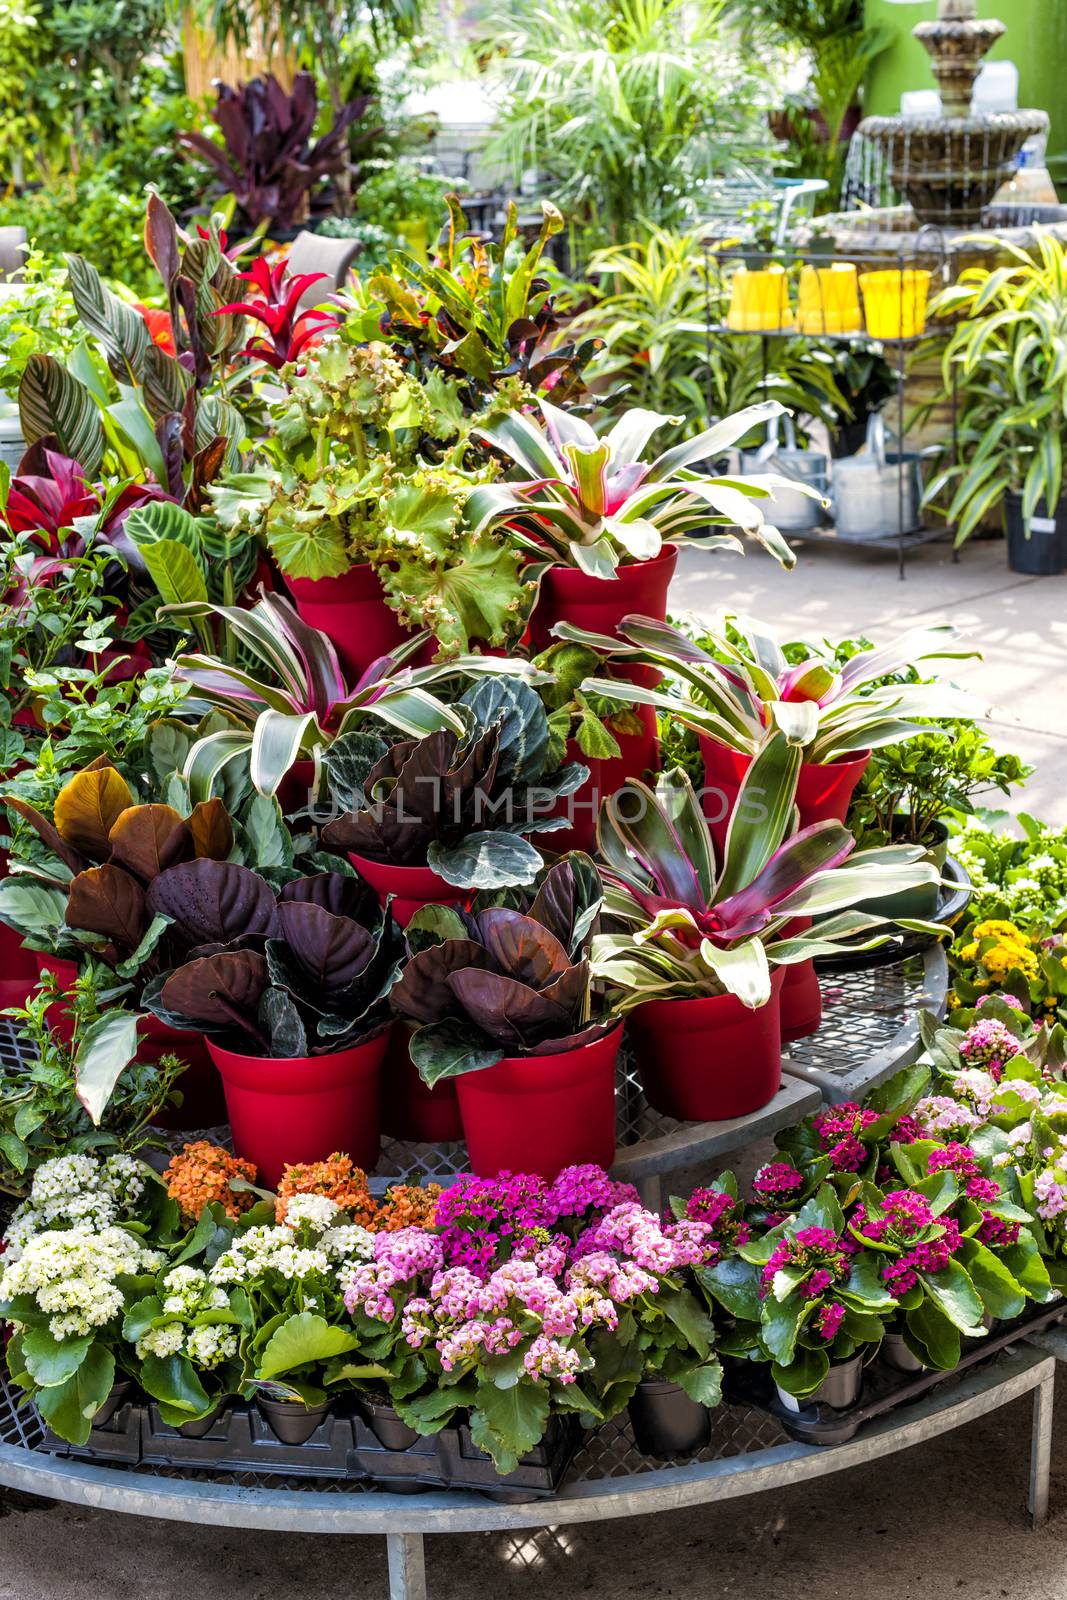 Plants for sale in nursery by elenathewise